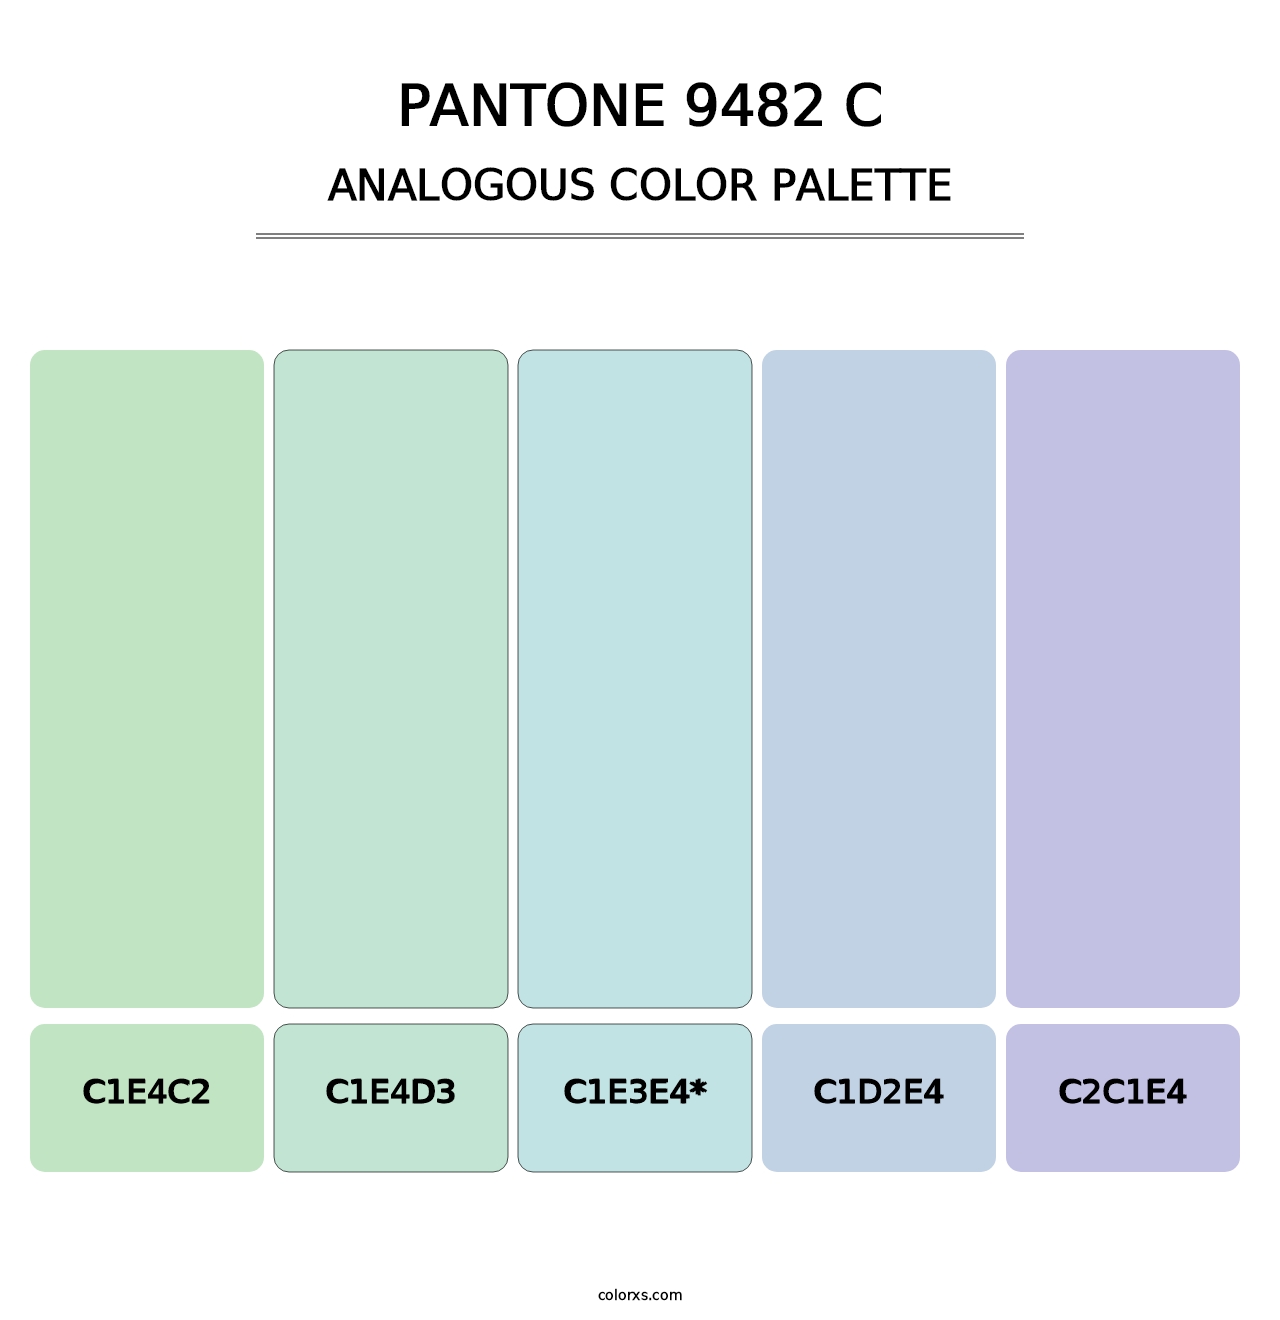 PANTONE 9482 C - Analogous Color Palette